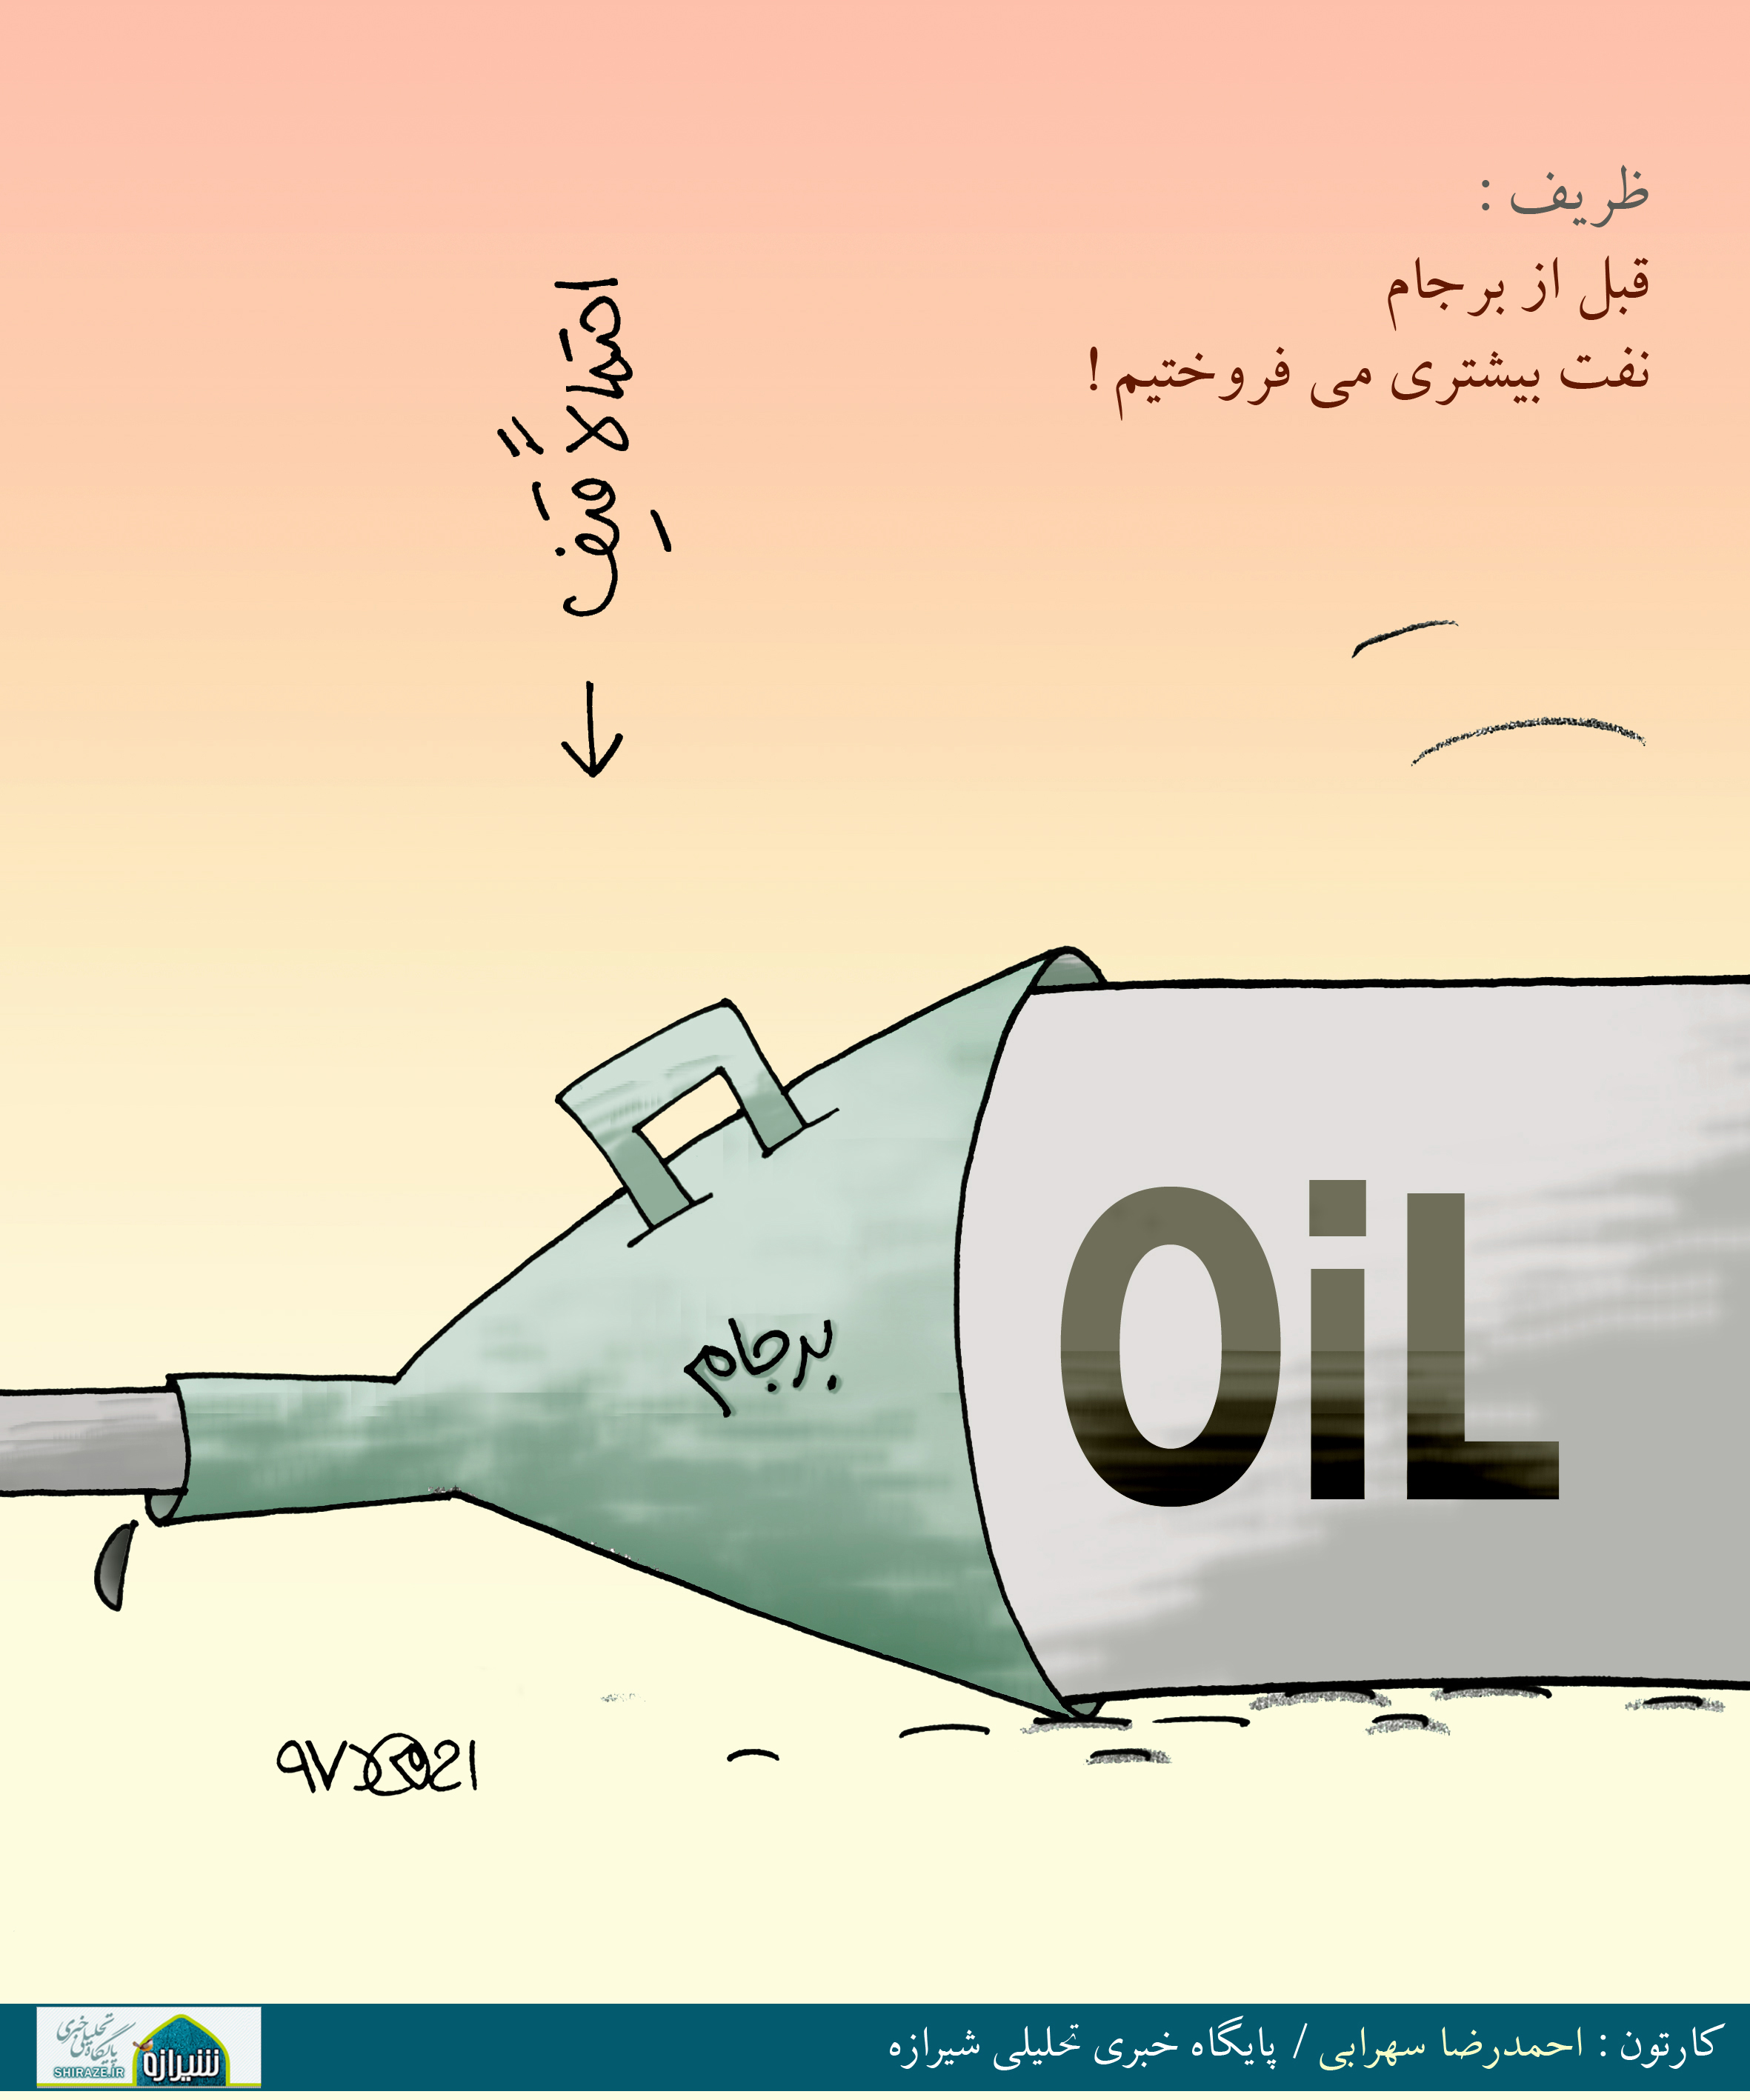 کاریکاتور شیرازه؛ قبل از برجام نفت بیشتری می فروختیم